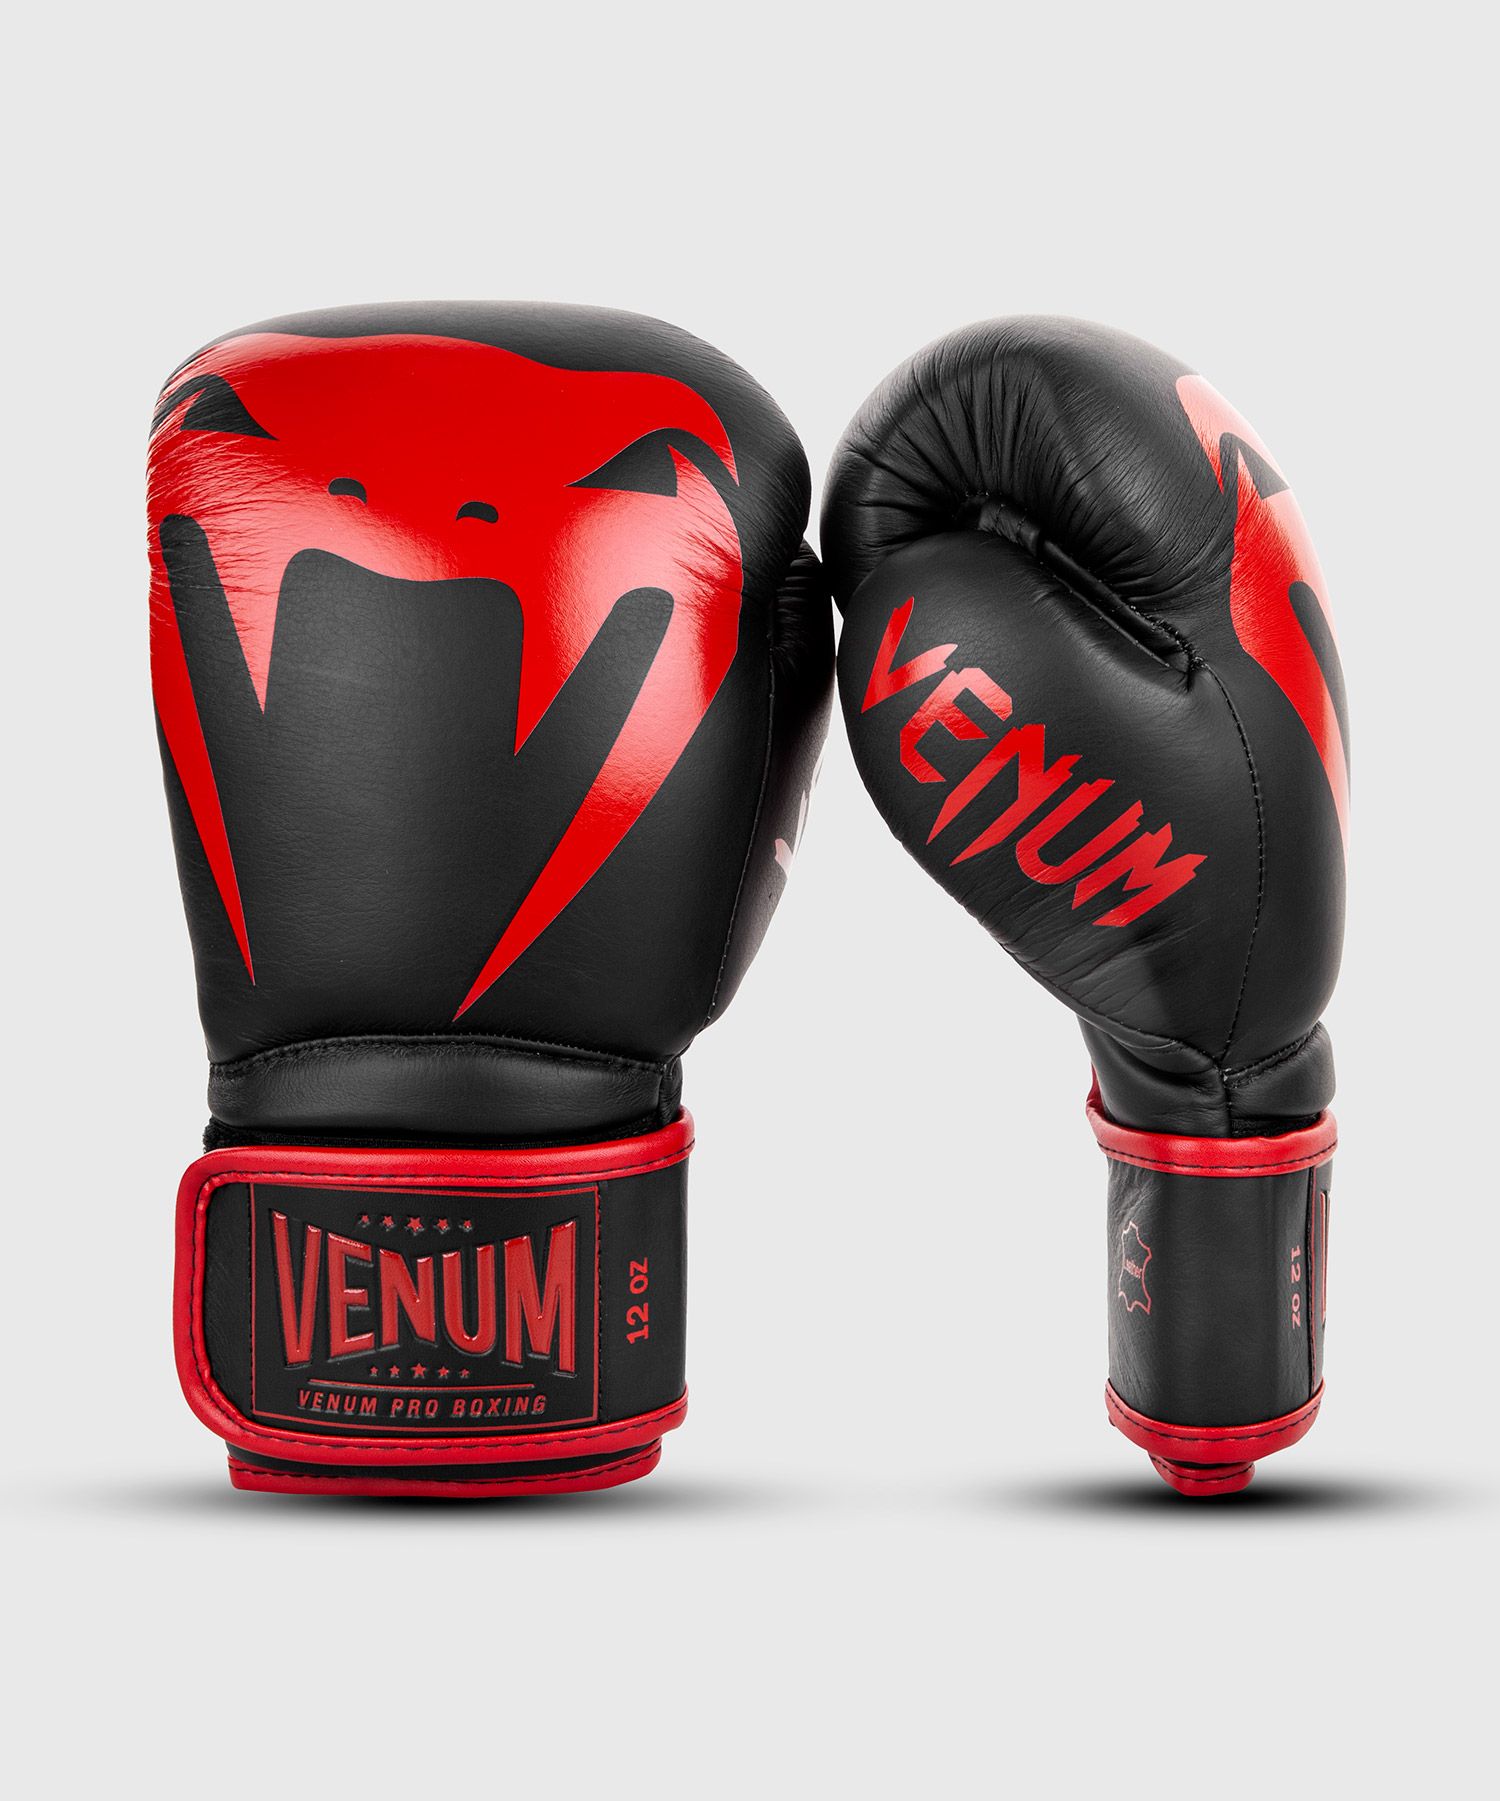 VENUMの最高峰ボクシンググローブ VENUM ボクシング グローブ GIANT 2.0 PRO BOXING ブラック×レッド 爆売り キックボクシング GLOVES スパーリンググローブ フィットネス ベロクロ ボクササイズ 送料無料 セール